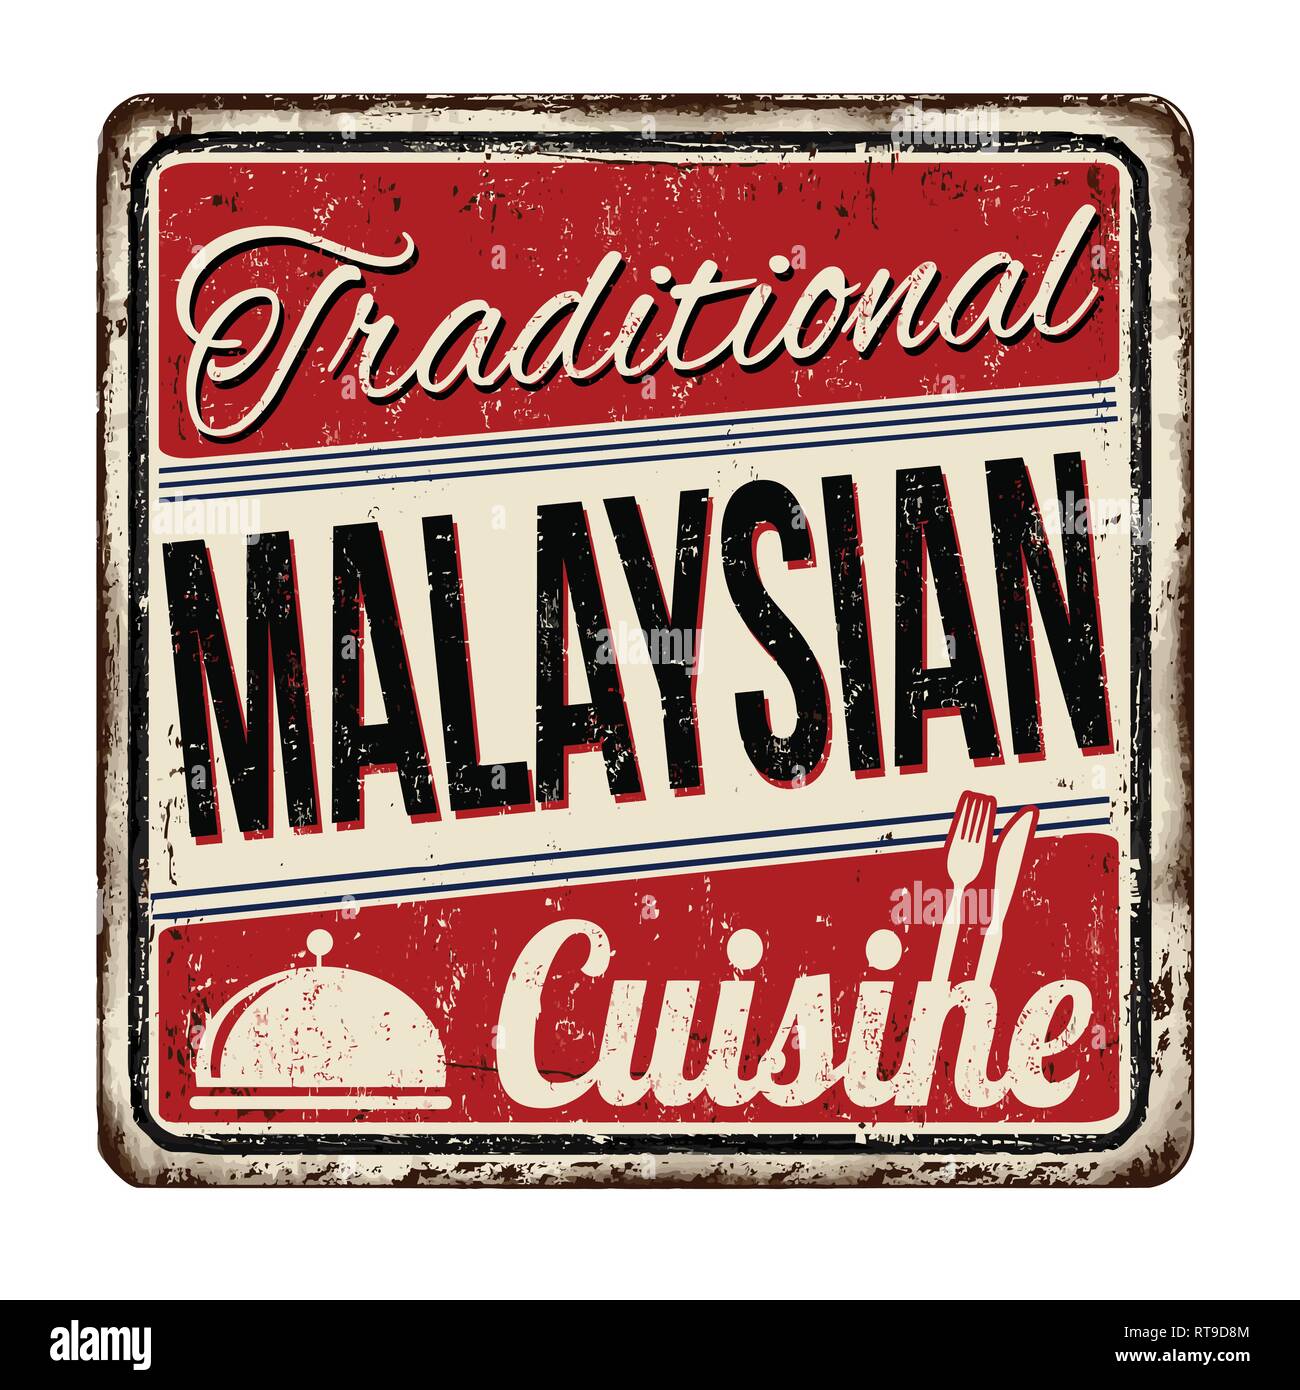 Traditionelle malaysische Küche vintage rostiges Metall Zeichen auf weißem Hintergrund, Vector Illustration Stock Vektor